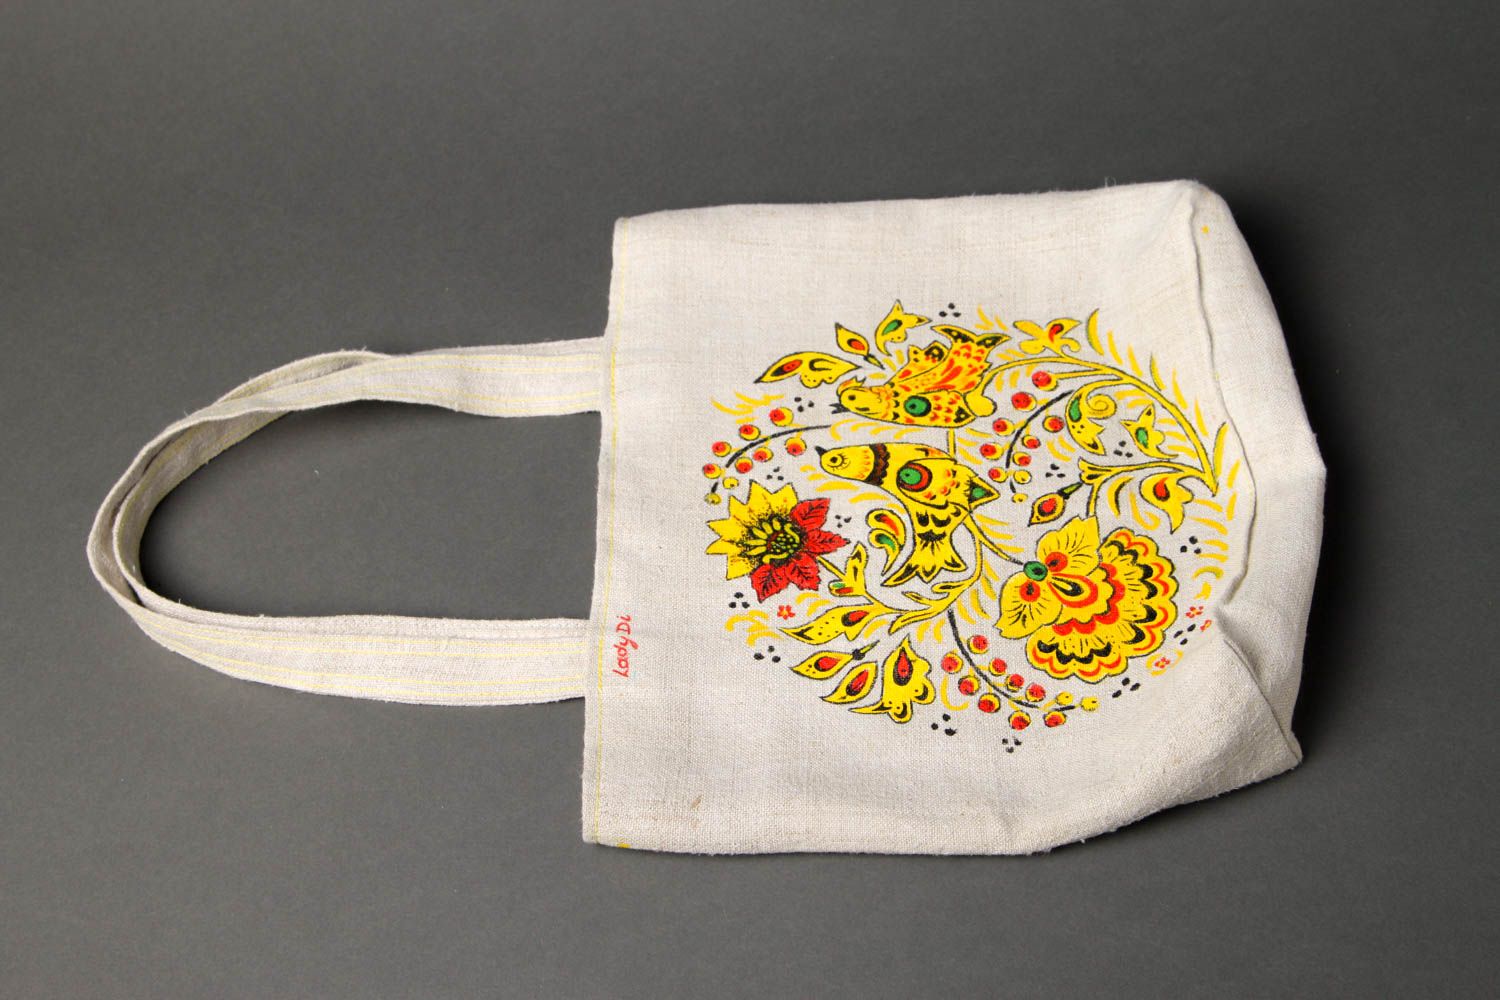 Сумка ручной работы женская сумка авторская тканевая сумка с ярким рисунком фото 2